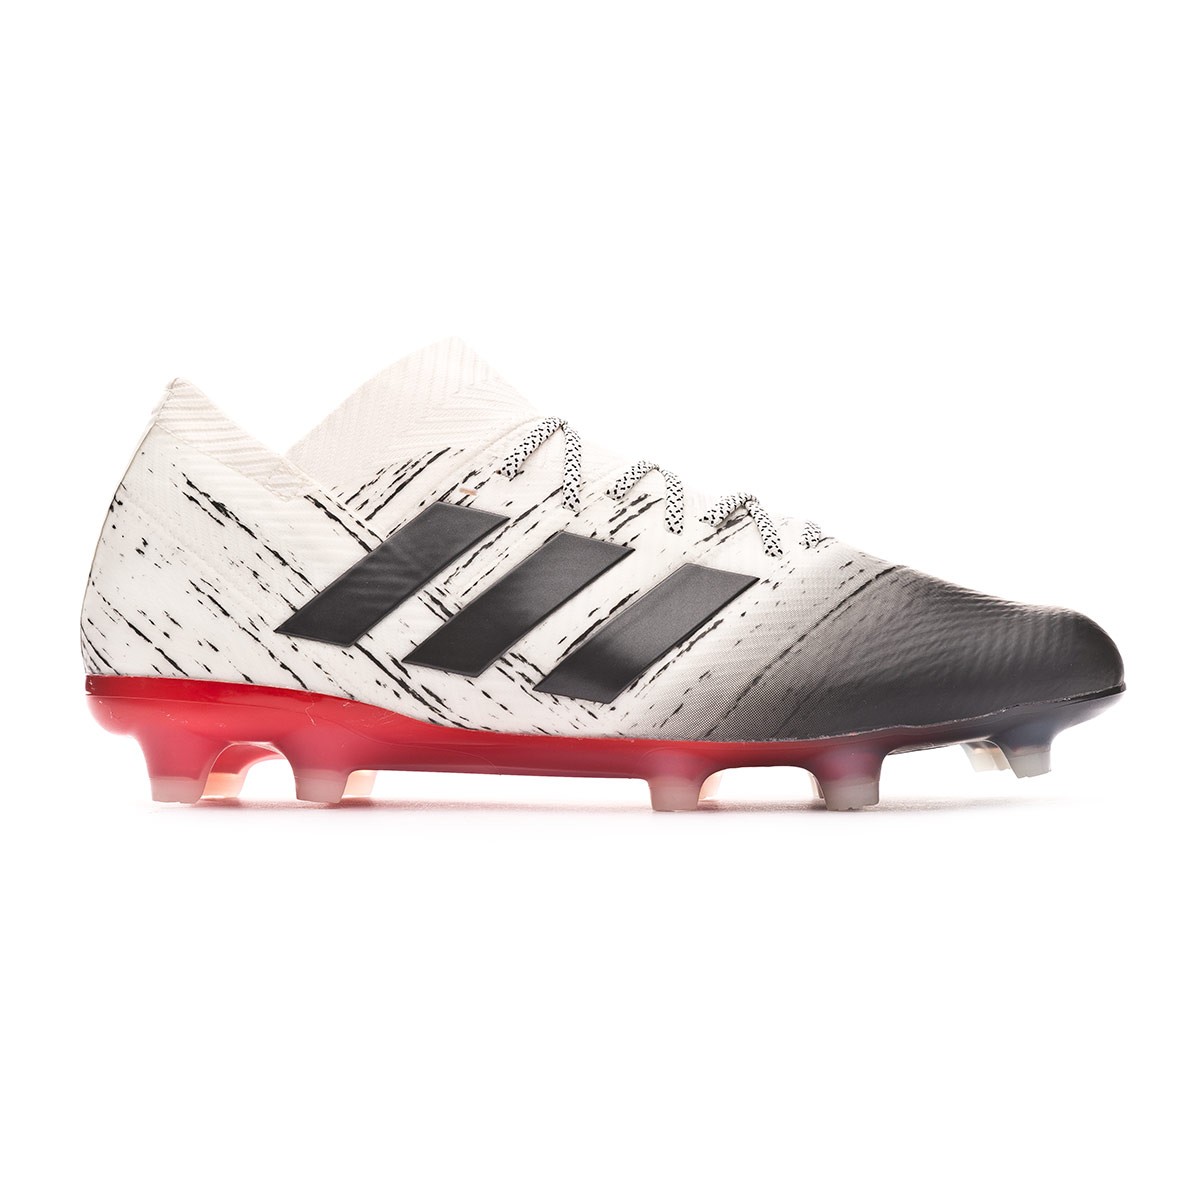 adidas nemeziz red and white